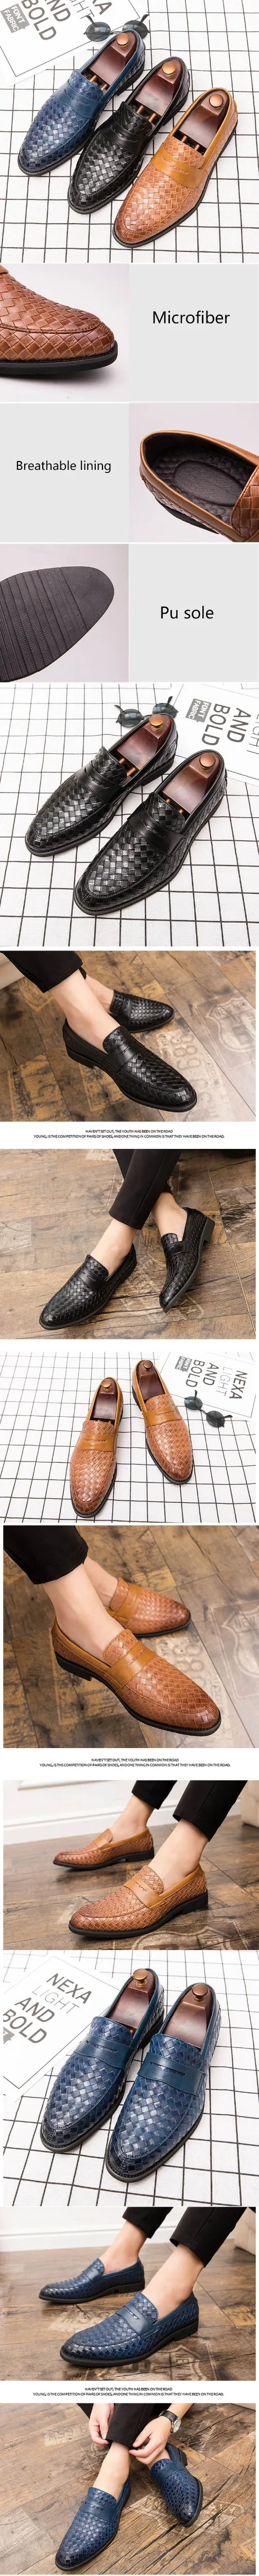 ARIARI/брендовые кожаные лоферы; Новая модная повседневная кожаная обувь; мужские деловые модельные туфли на плоской подошве; офисные мужские лоферы; большой размер 48